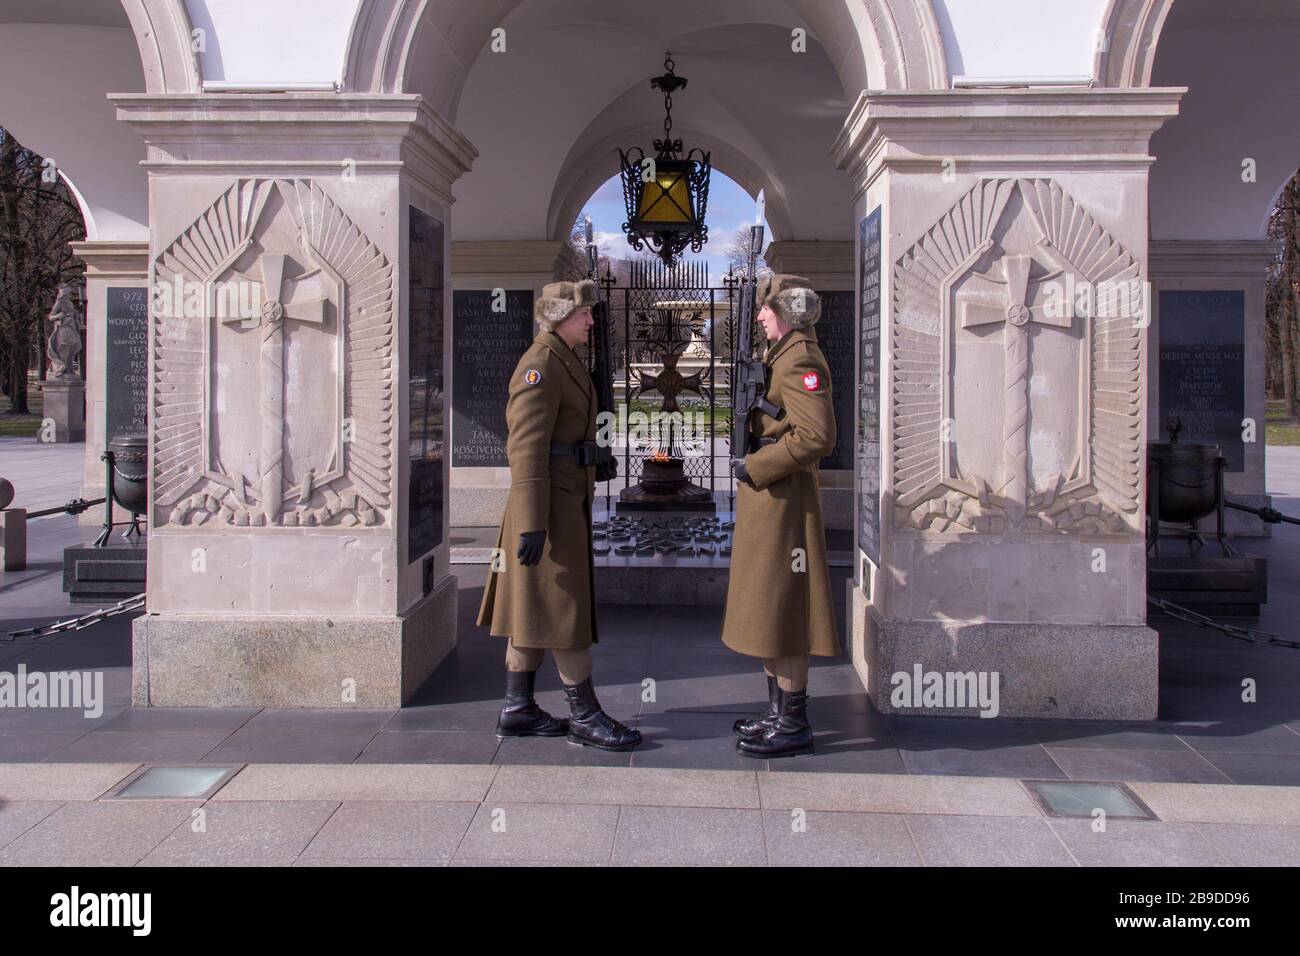 Tombe du Soldat inconnu à Varsovie Pologne Banque D'Images